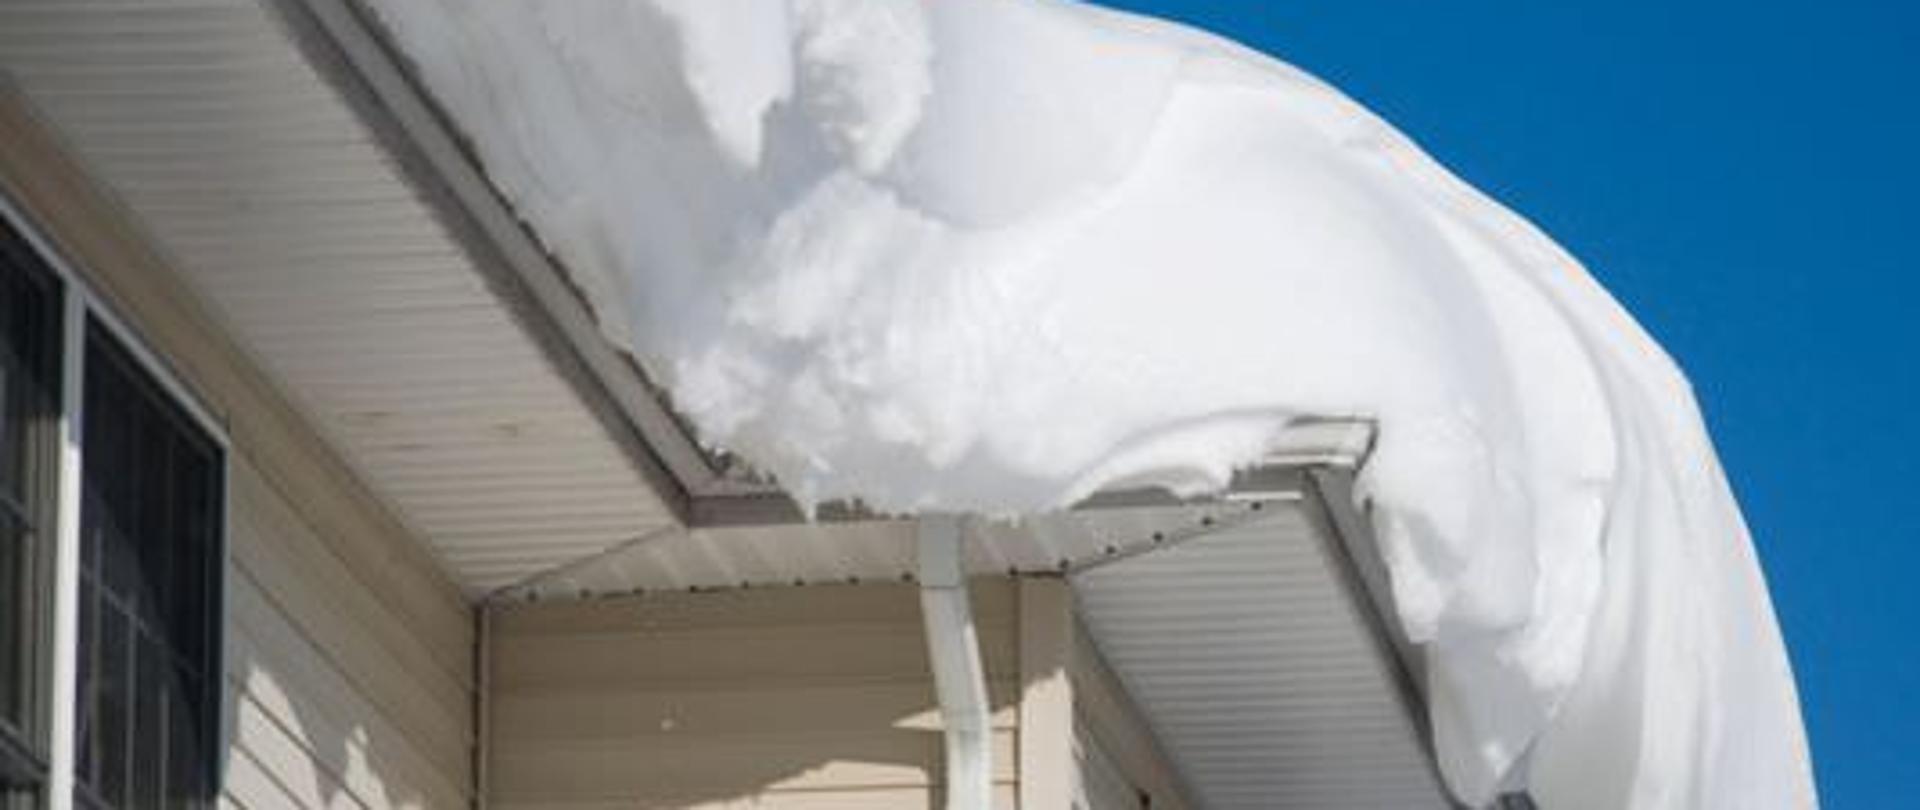 Duża ilość śniegu leży na dachu budynku o jasnych ścianach i podbitce